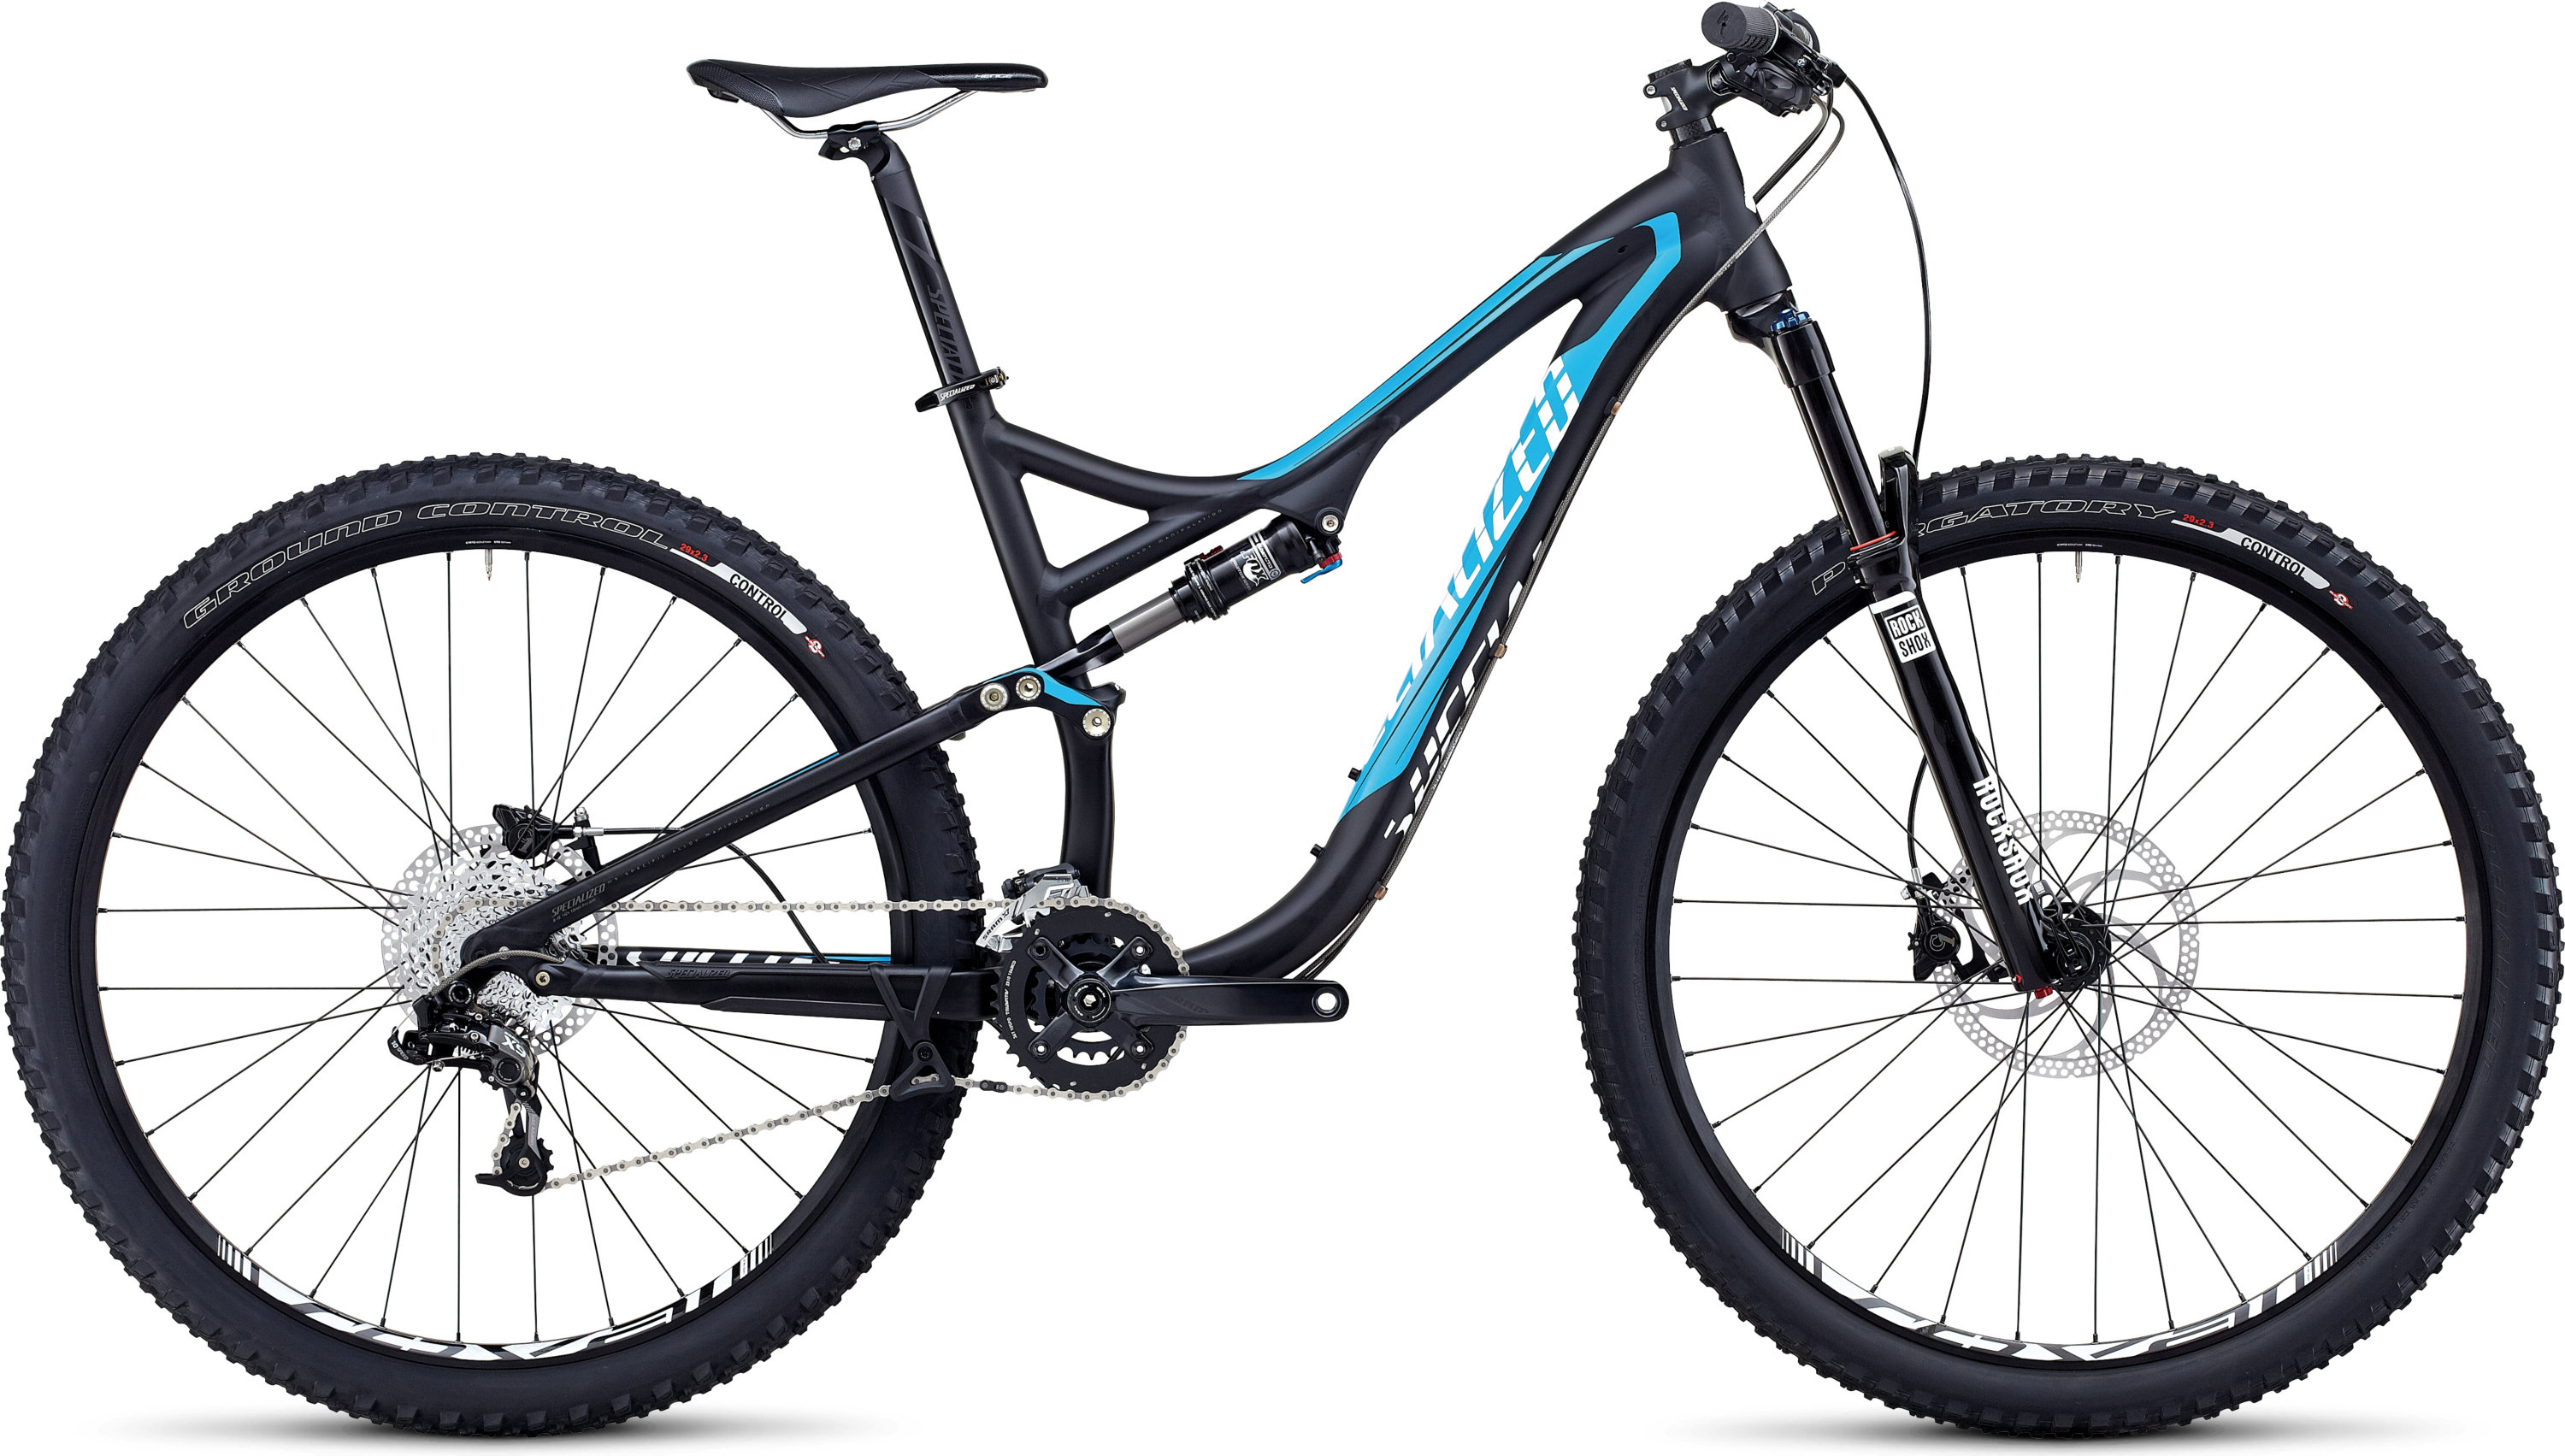 the beiou carbon fiber 27.5 mountain bike